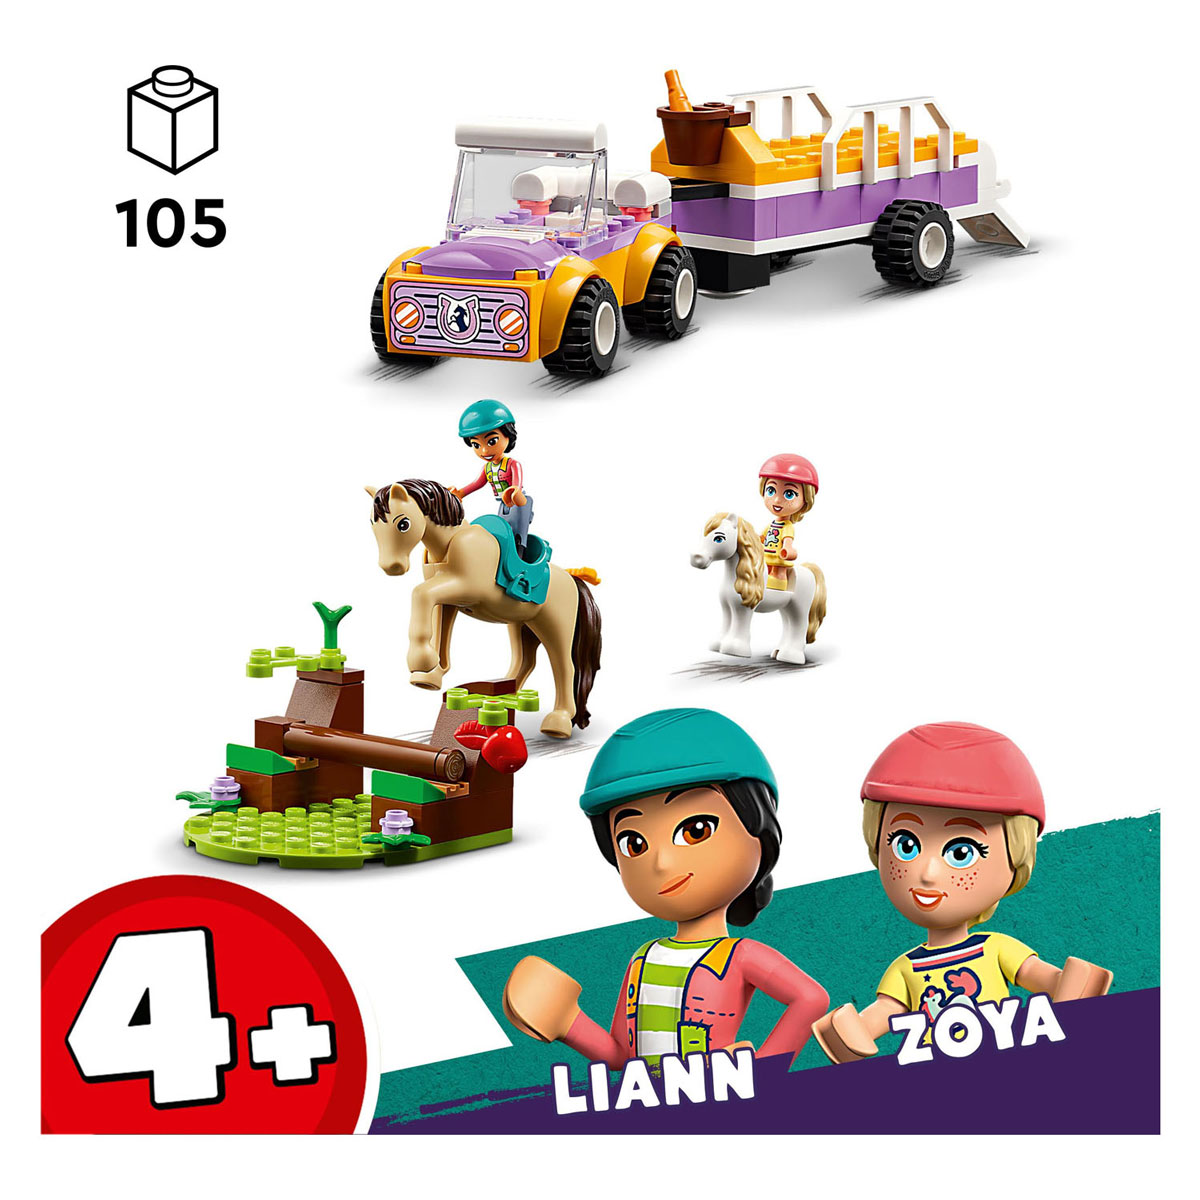 LEGO Friends 42634 Pferde- und Ponyanhänger